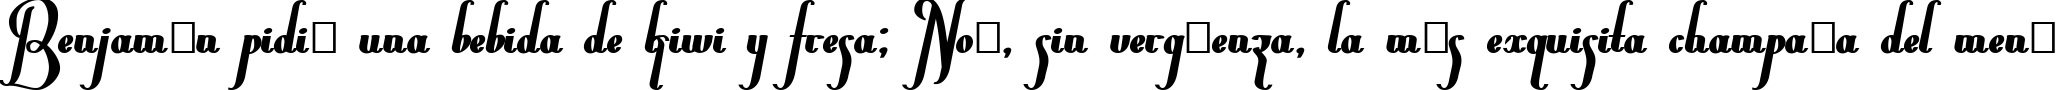 Пример написания шрифтом Chancera Bold текста на испанском